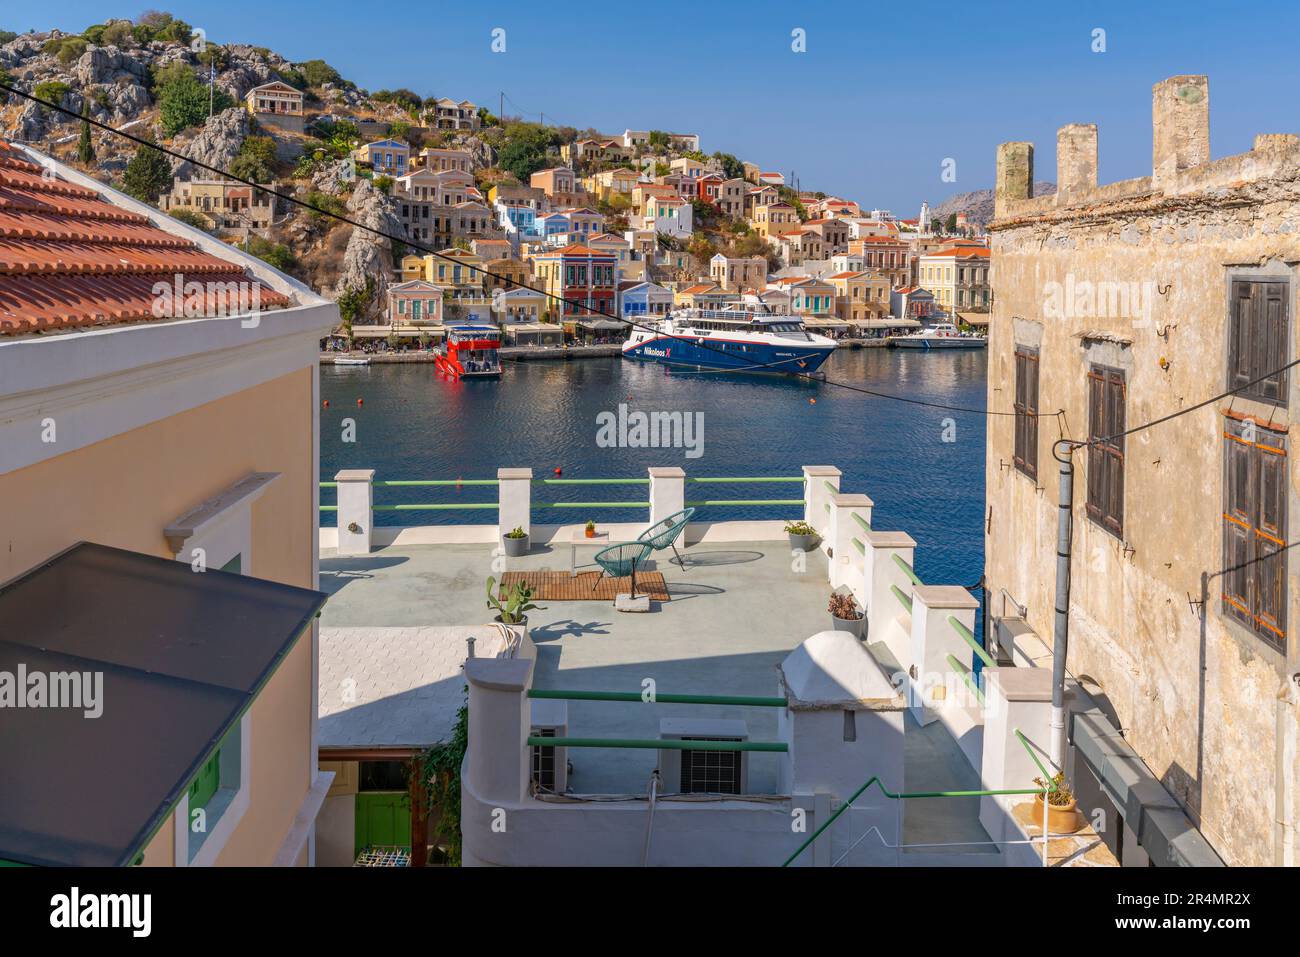 Vue sur le port depuis une position surélevée dans la ville de Symi, l'île de Symi, le Dodécanèse, les îles grecques, la Grèce, Europe Banque D'Images